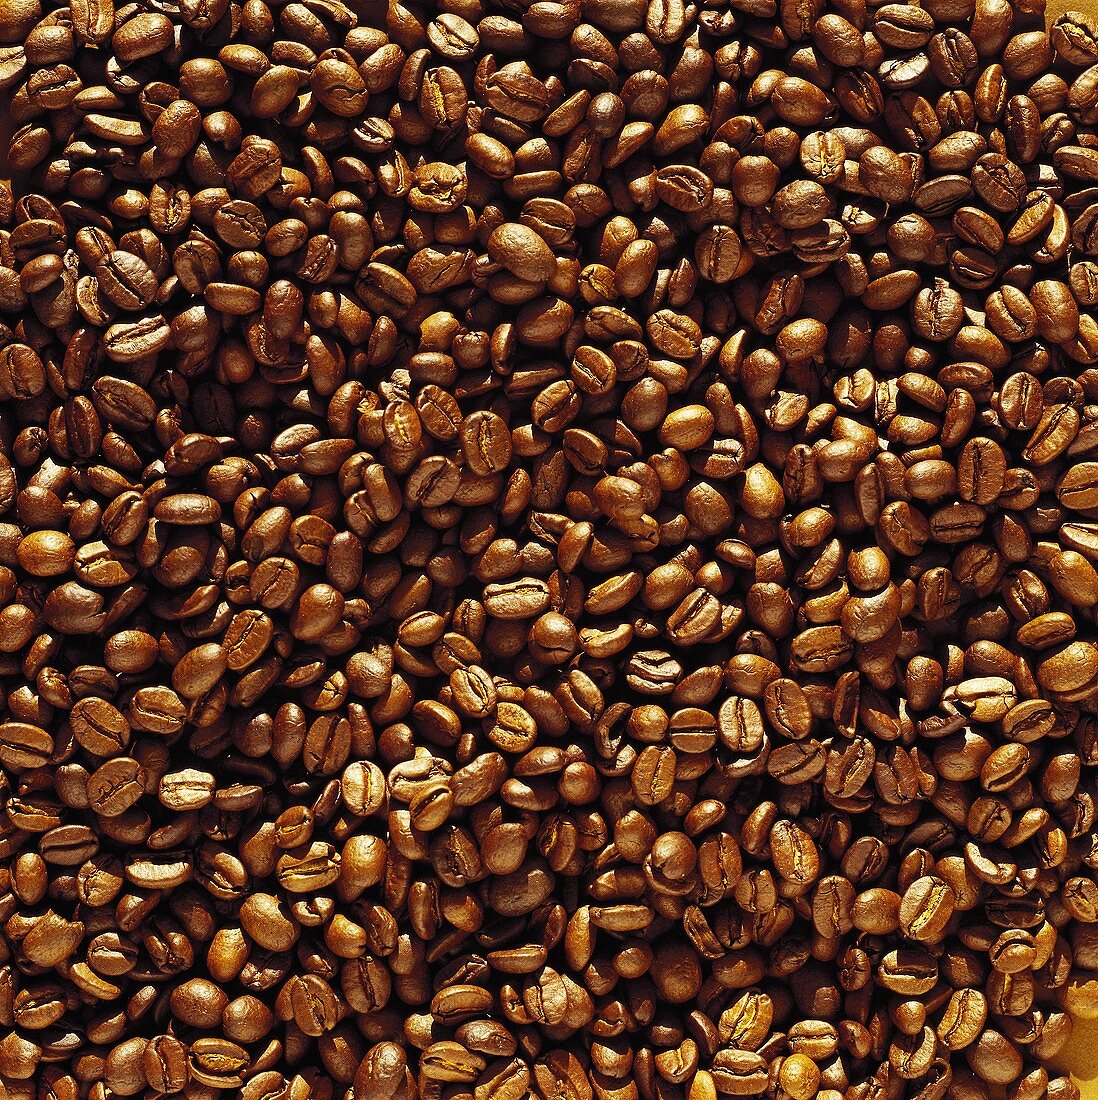 Kaffeebohnen (Ausschnitt)